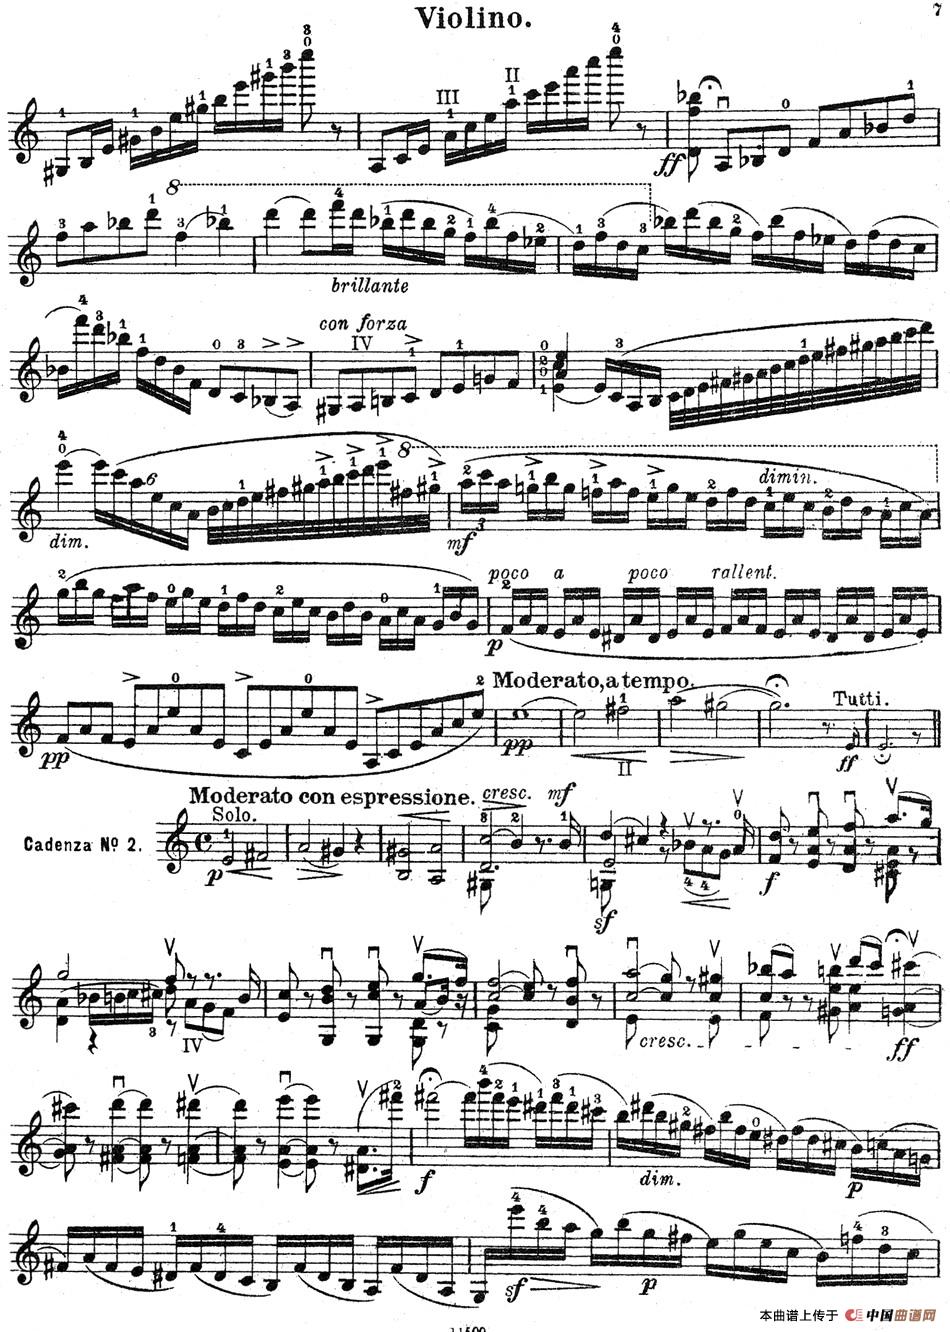 Violin Concerto in A minor No.5 Op.37